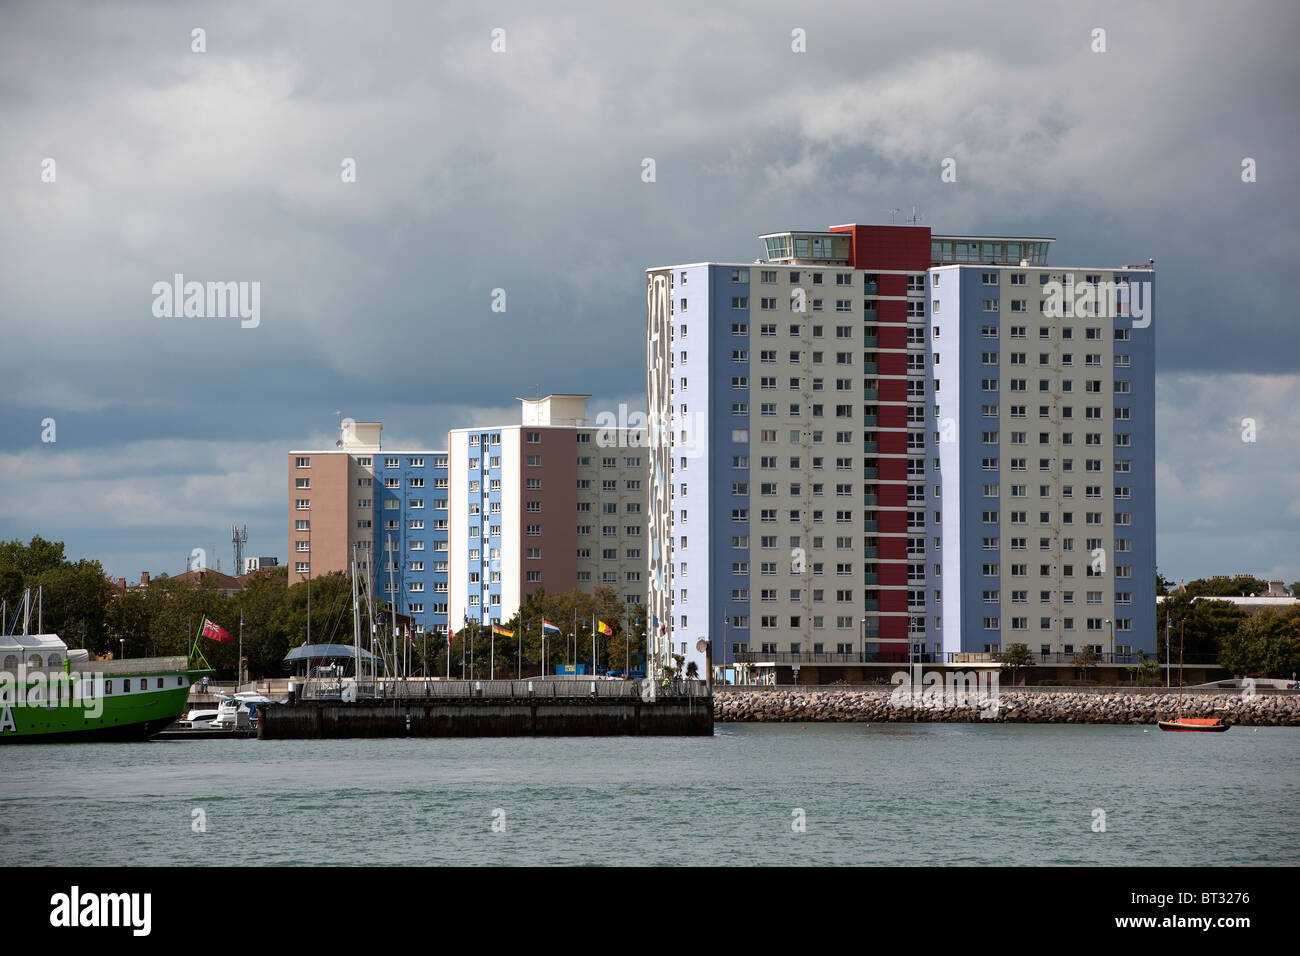 Des tours d'appartements sur le port de Portsmouth Harbour Gosport, Gosport, Hampshire, Angleterre, photographie prise à partir de l'île de Portsea. Banque D'Images